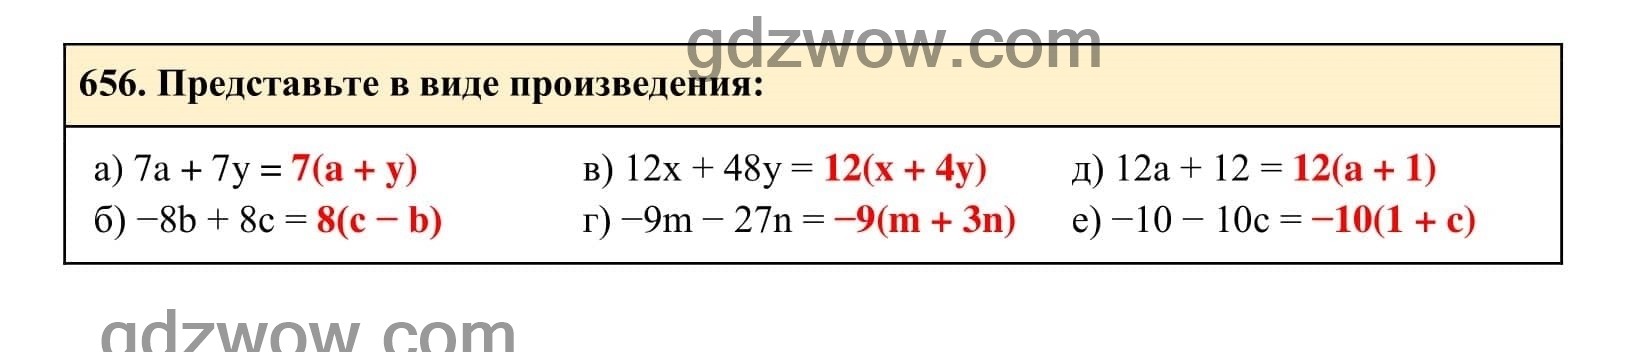 Упражнение 656 - ГДЗ по Алгебре 7 класс Учебник Макарычев (решебник) - GDZwow